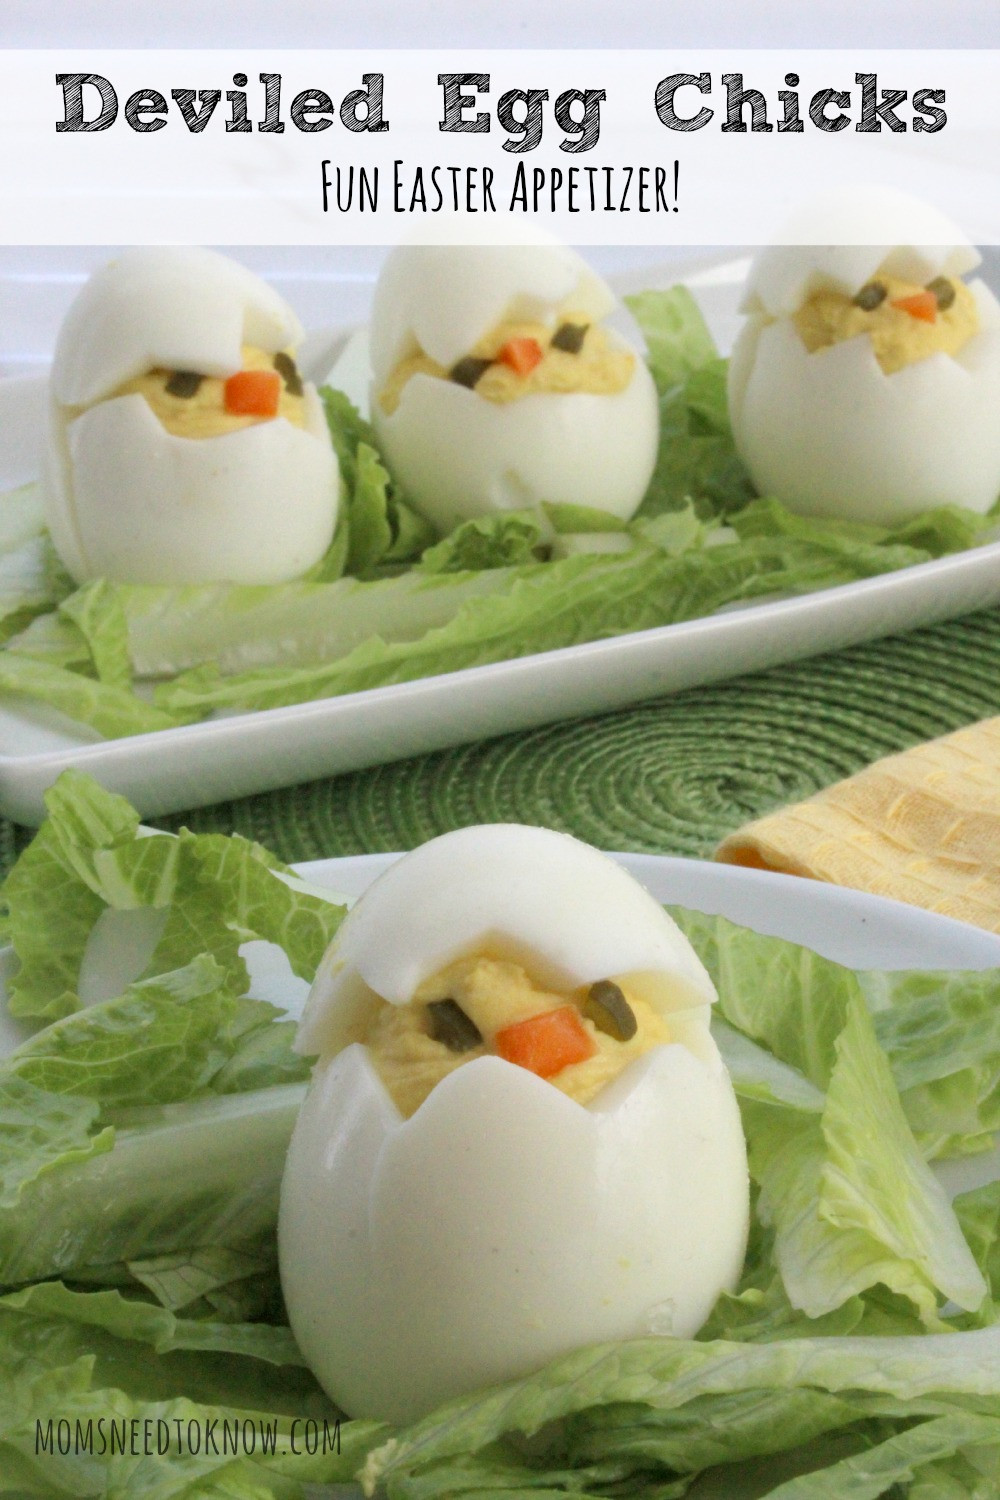 Cute Deviled Eggs For Easter
 How to Make Deviled Egg Chicks